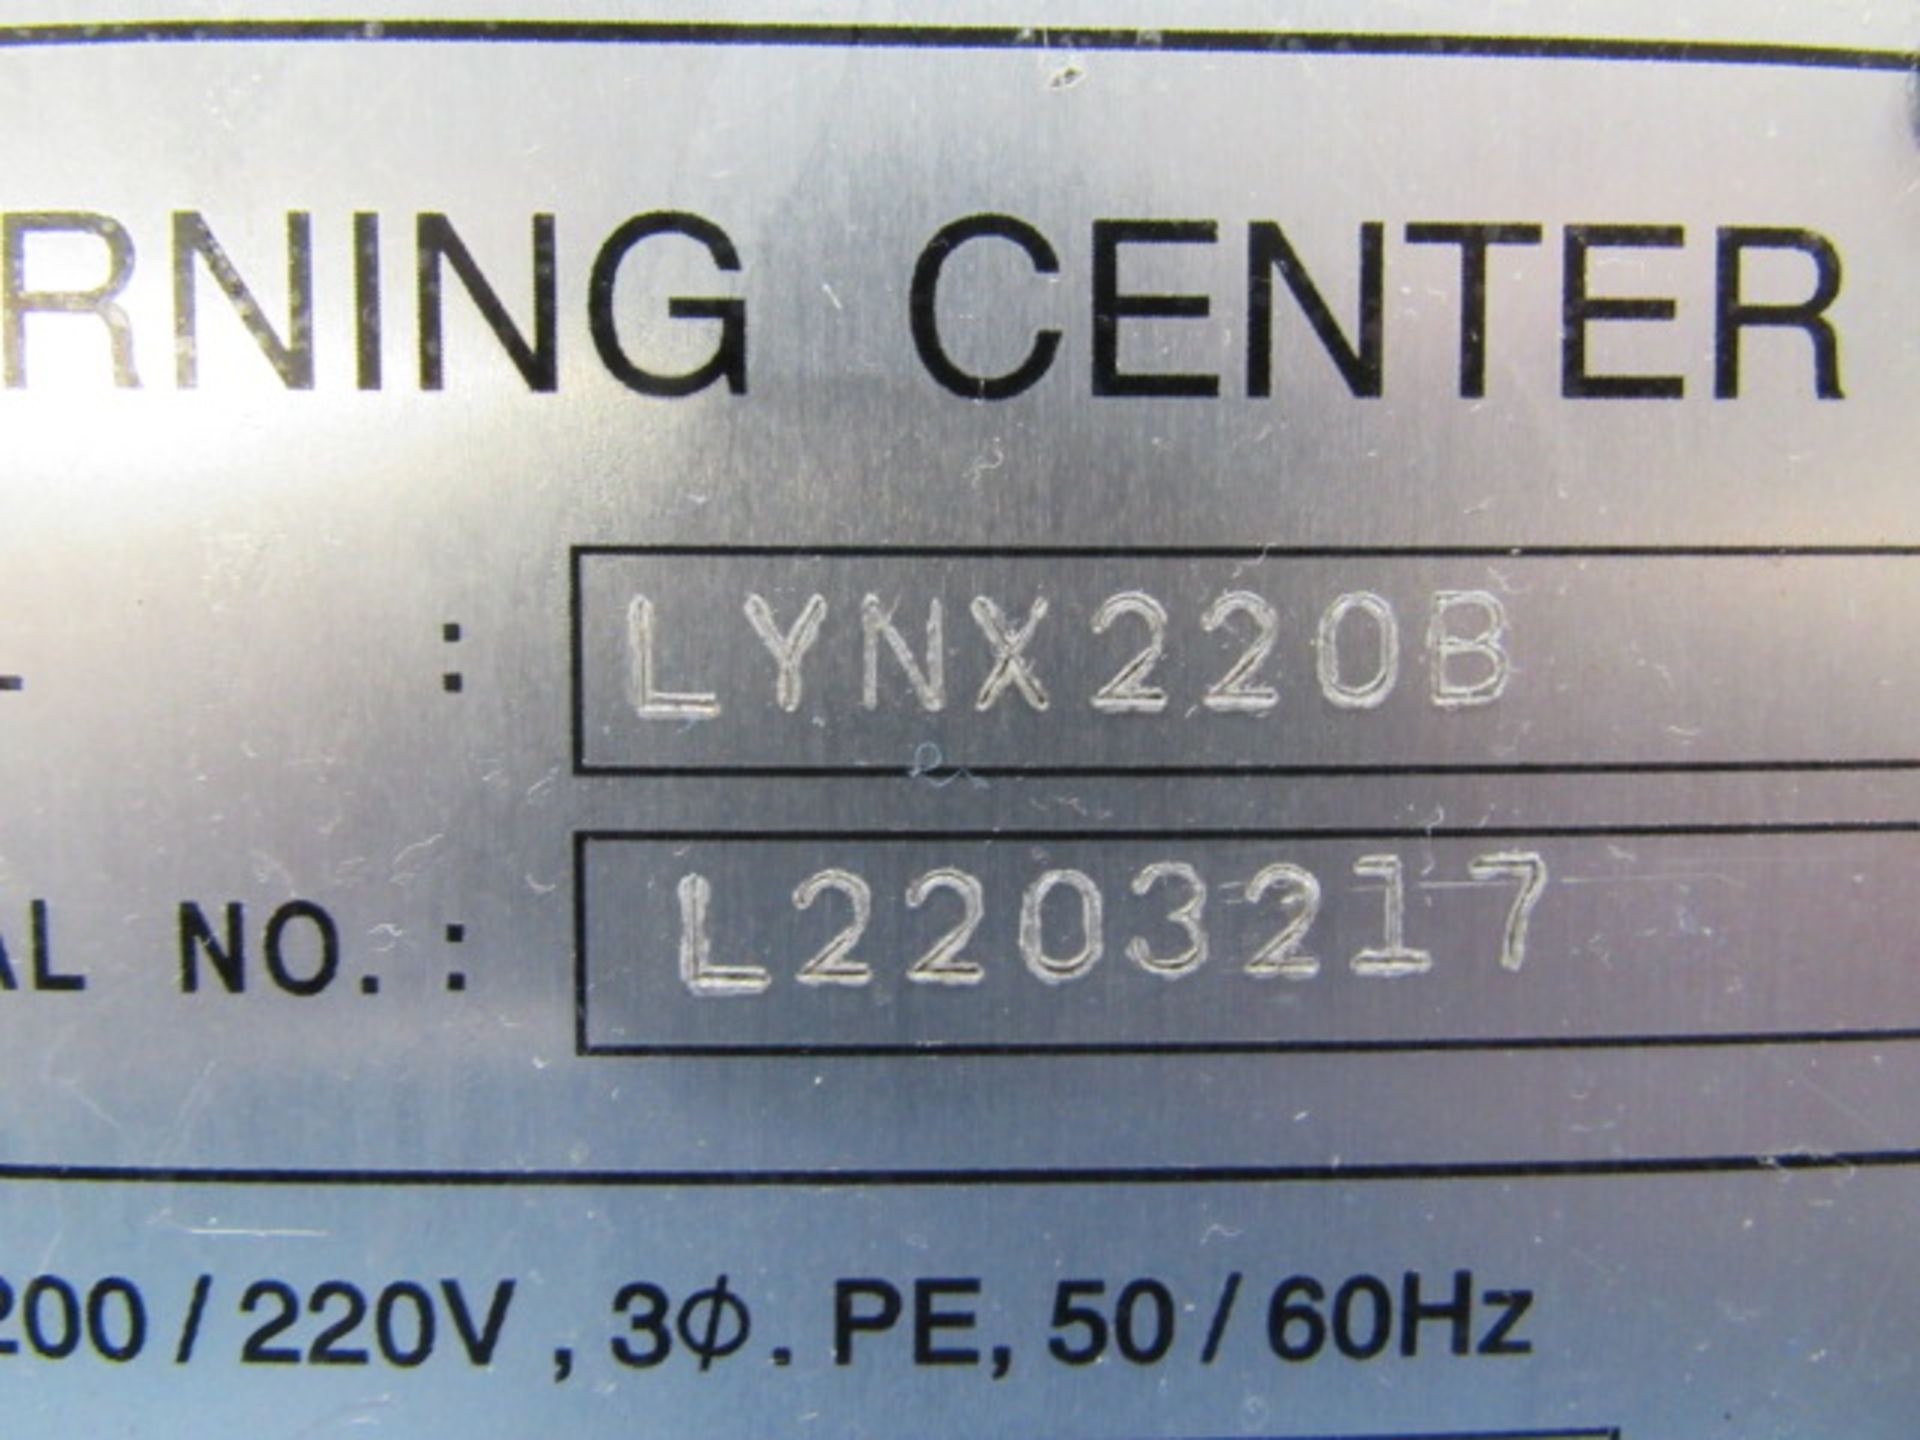 Doosan Lynx 220 B/C CNC Turning Center - Image 7 of 7